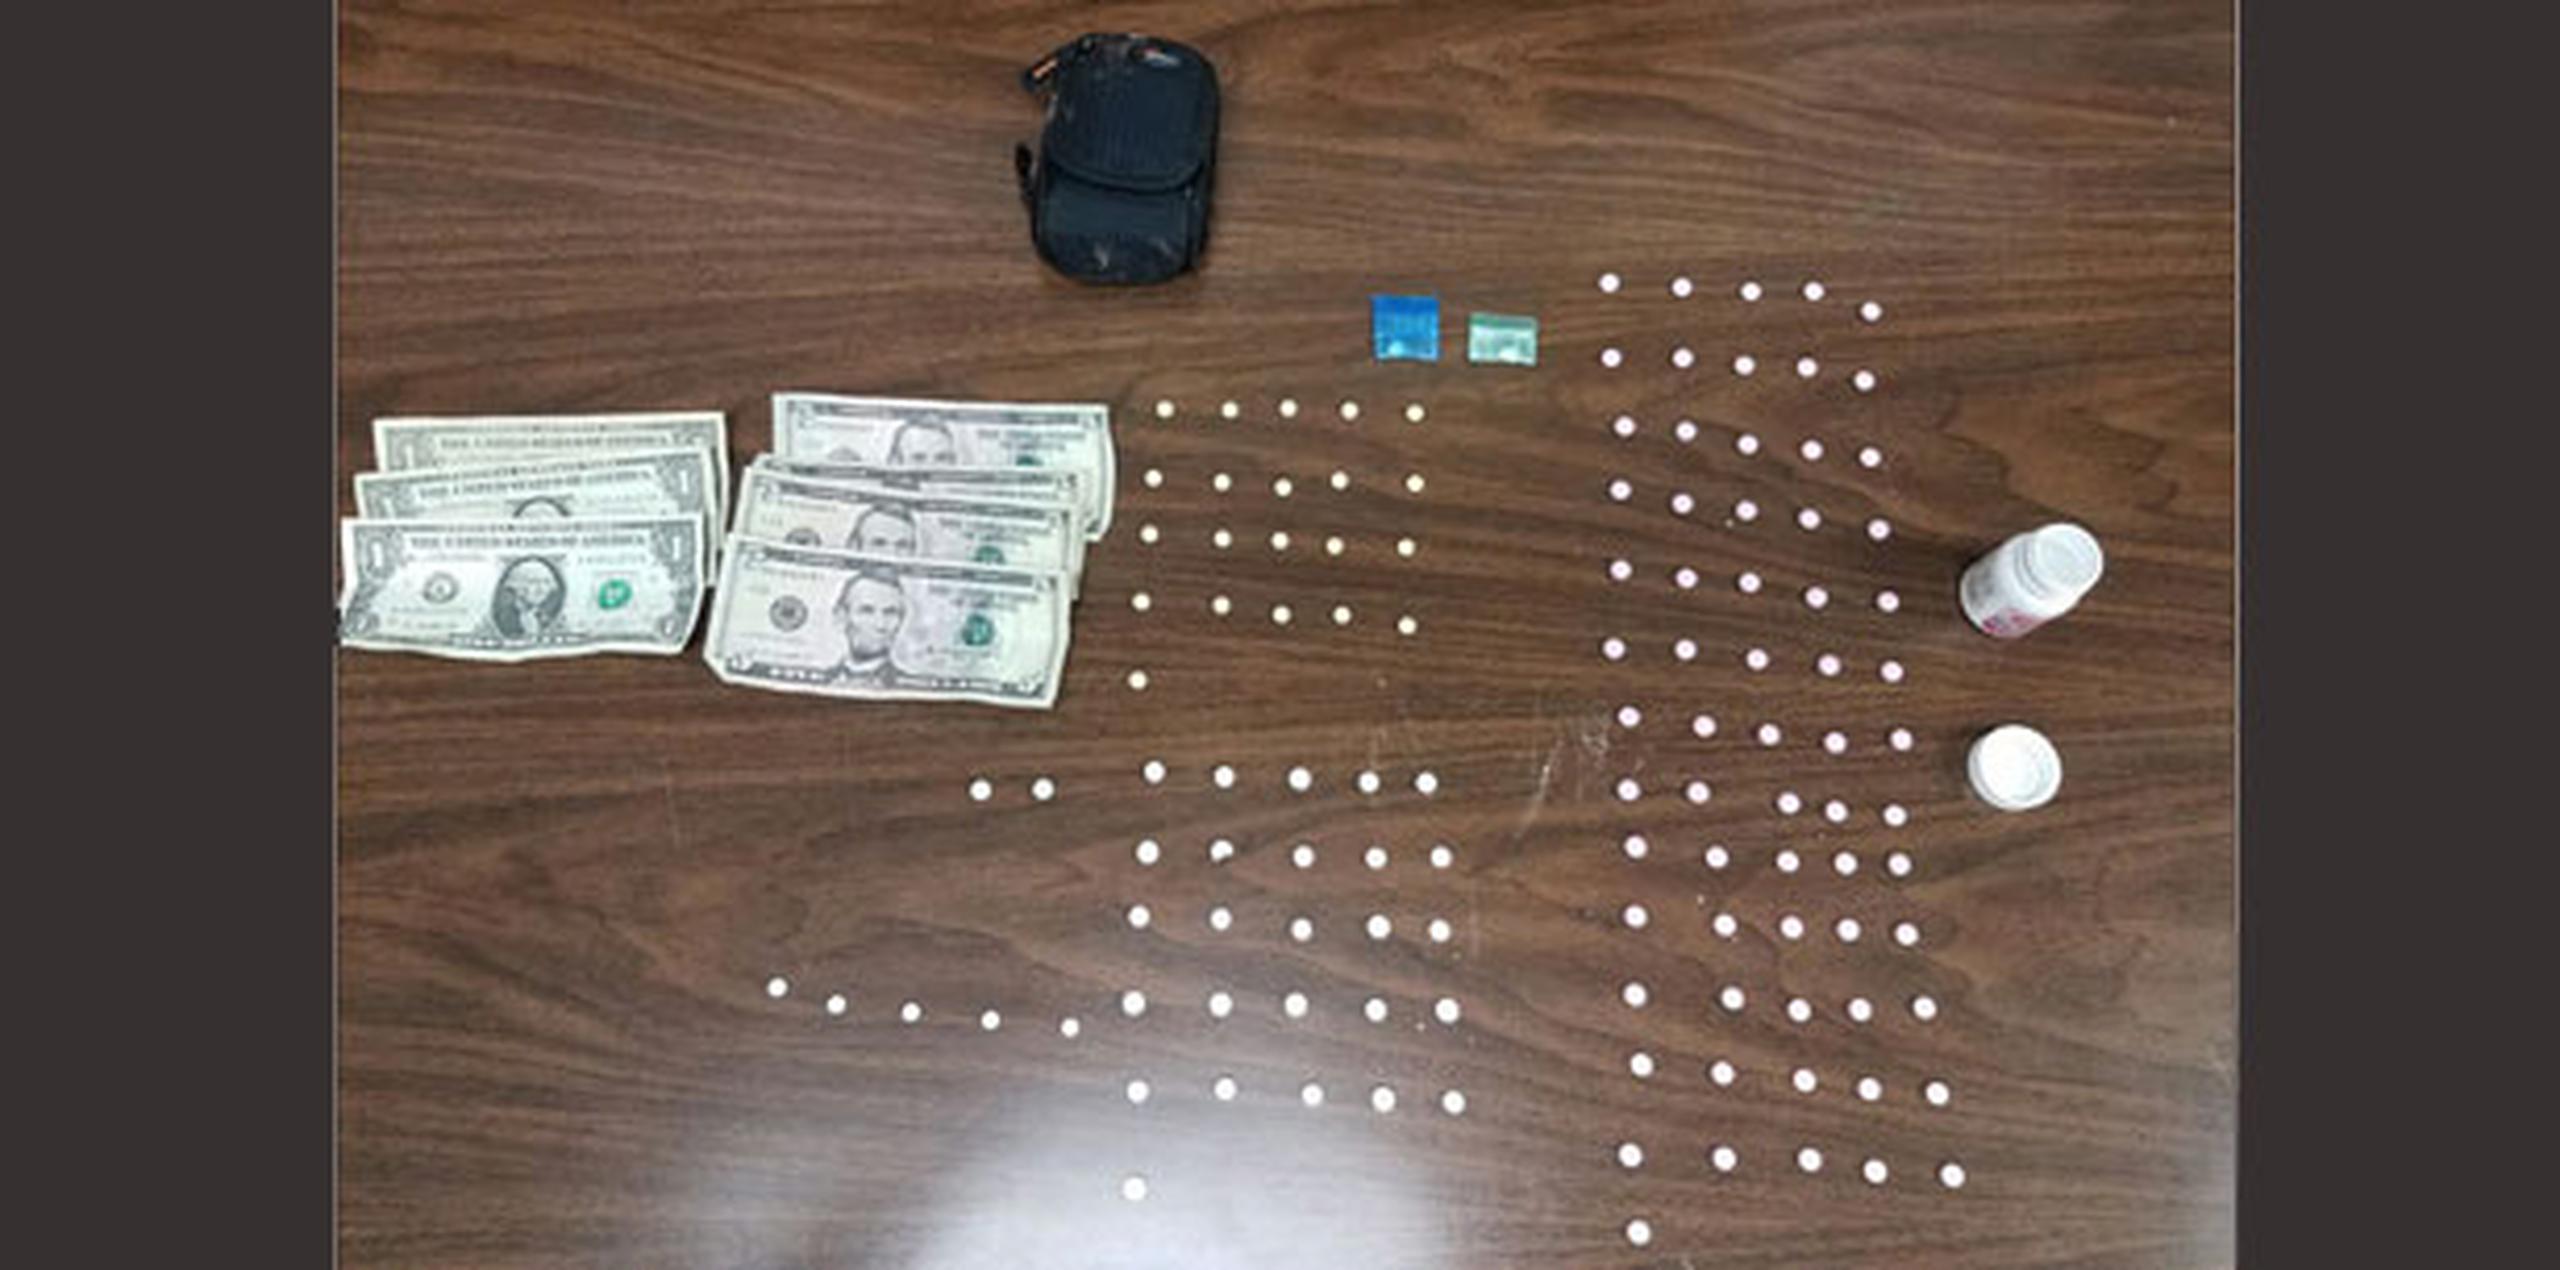 Al momento del arresto, al detenido, de 20 años, se le ocuparon dos bolsitas con cocaína, el cigarrillo de marihuana que fumaba, 119 pastillas de medicamentos controlados y $23 en efectivo. (Suministrada)